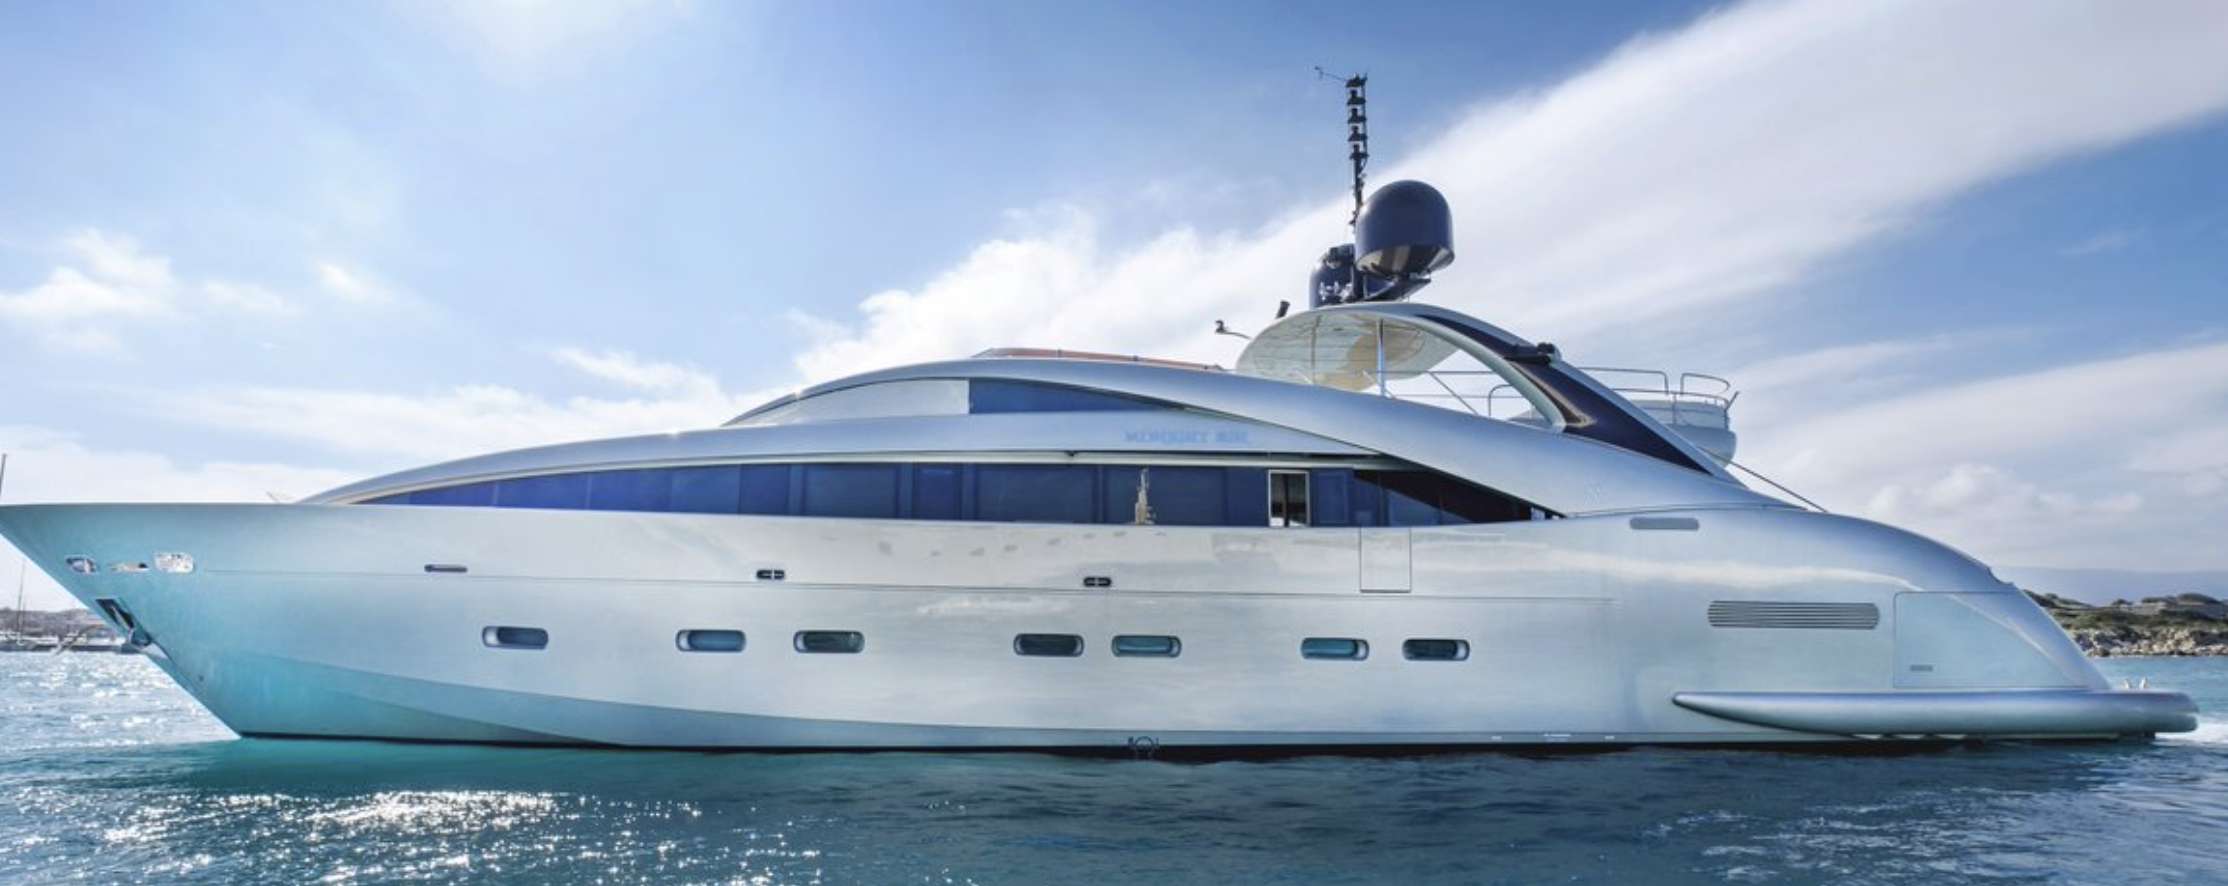 YCM 120 - Yacht Charter Vilajoyosa & Boat hire in Riviera, Corsica, Sardinia, Spain, Balearics, Caribbean 4